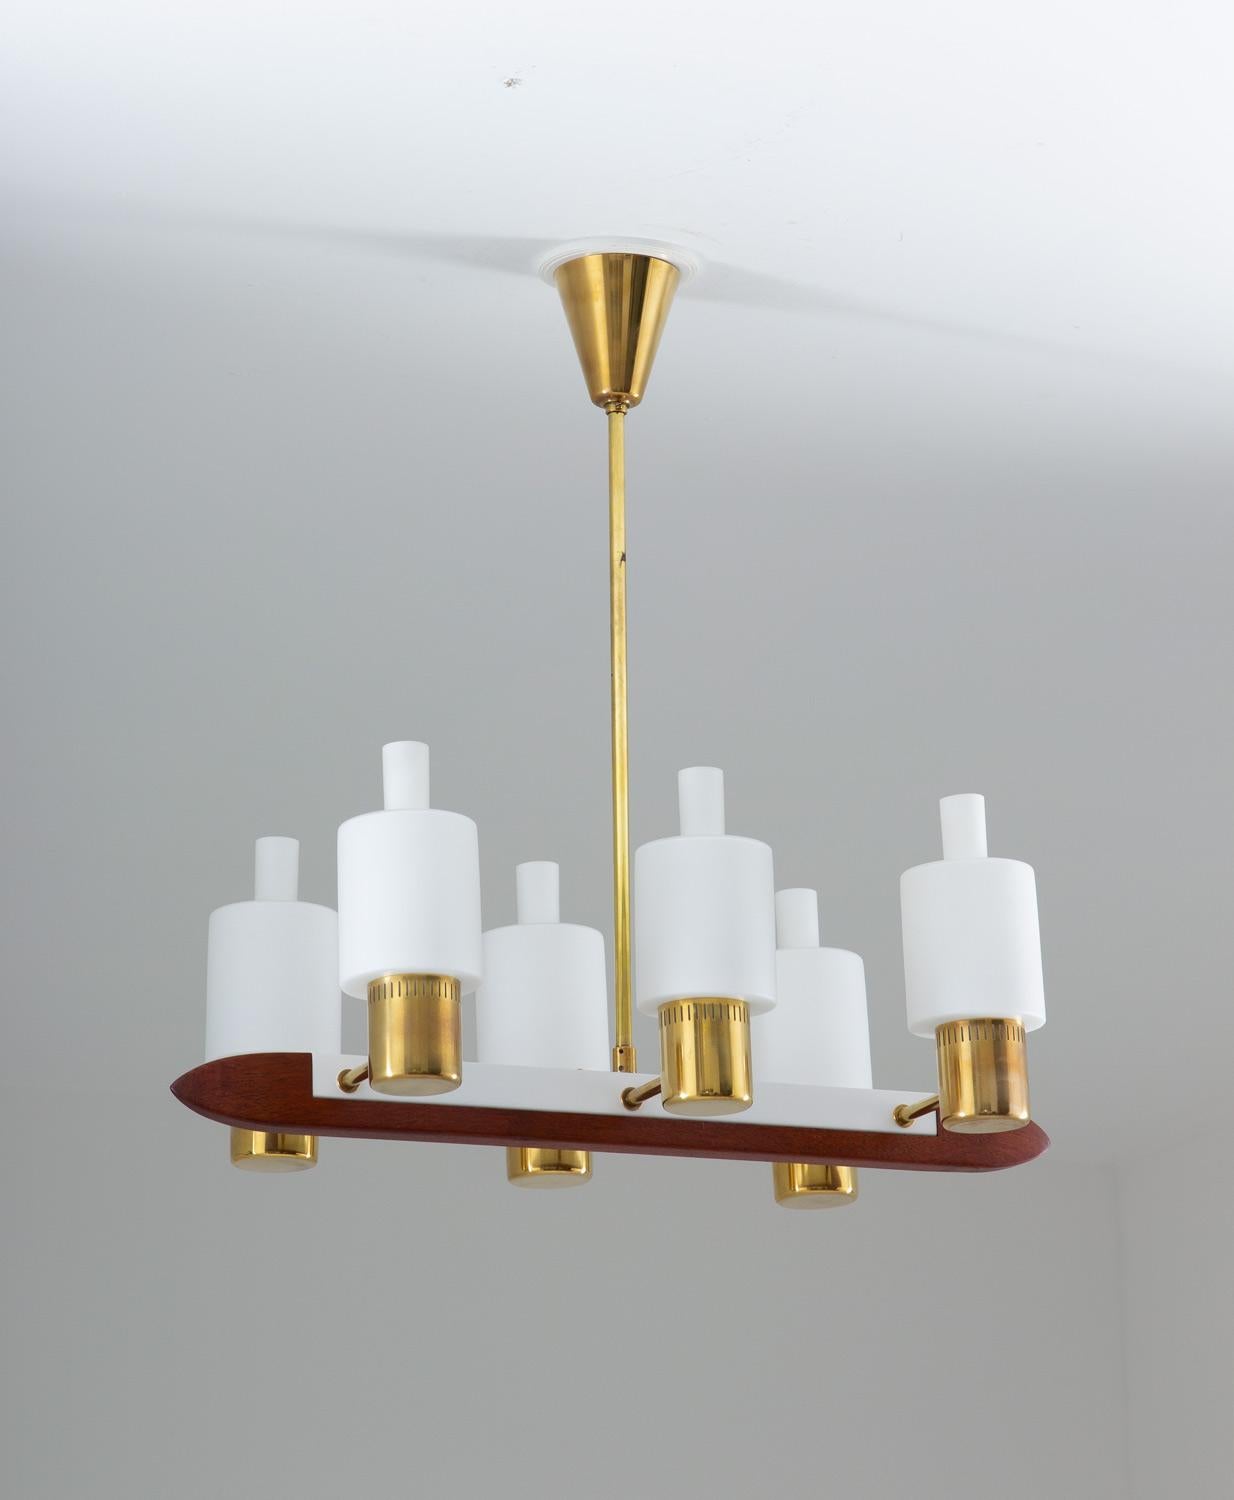 Rare pair of midcentury ceiling lamps by Jo Hammerborg for Fog & Mørup Denmark, model 